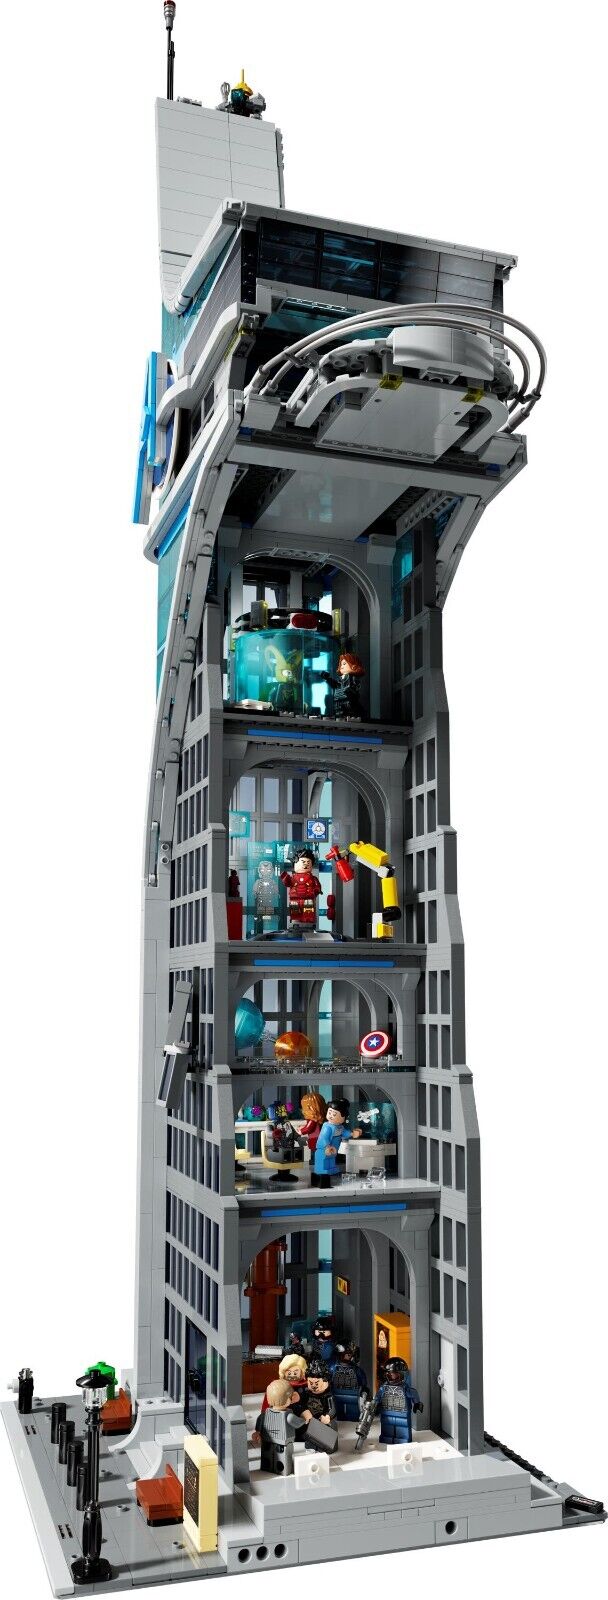 LEGO Marvel Avengers Tower 76269